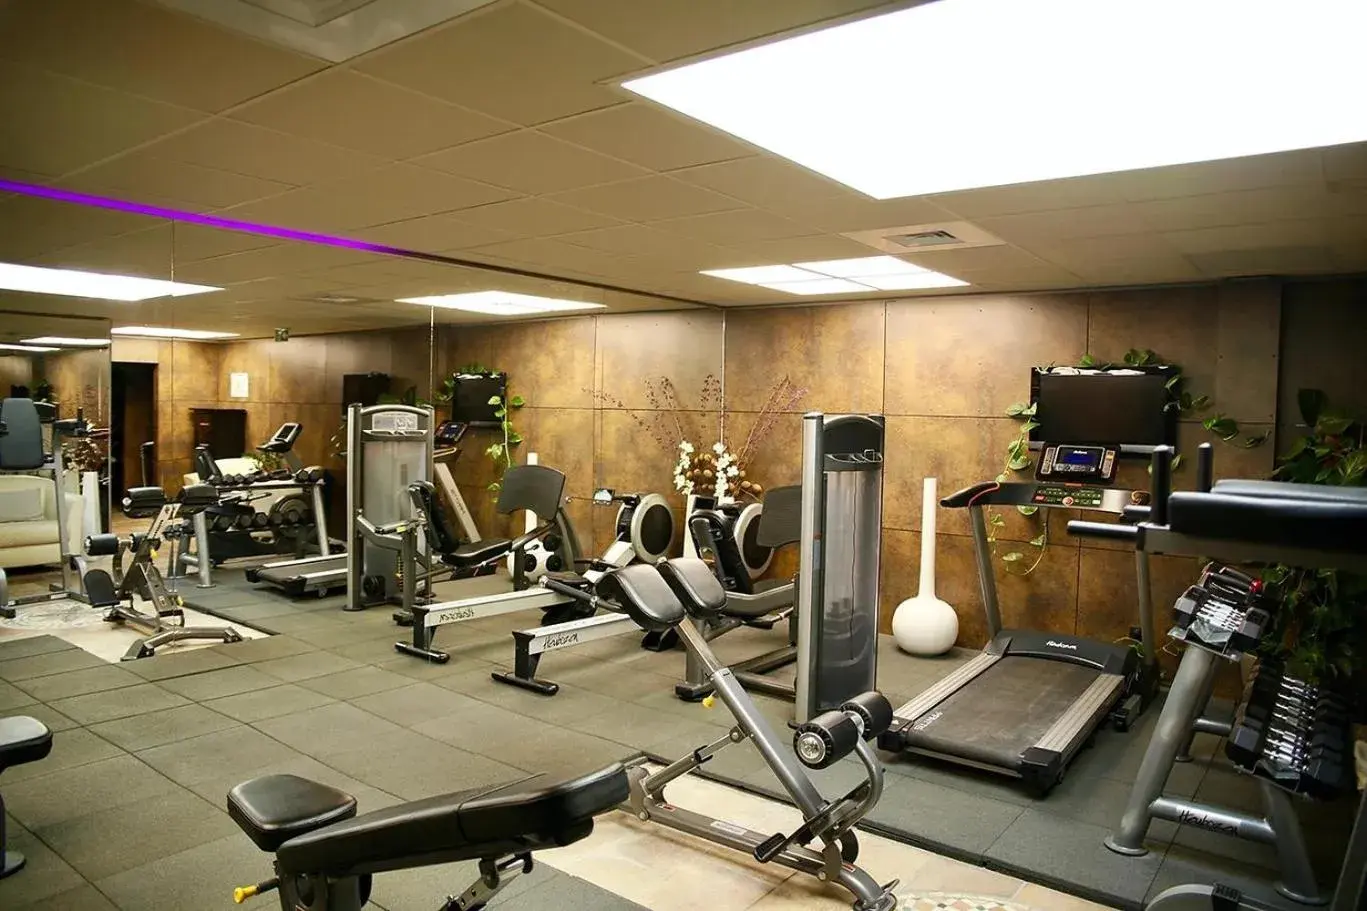 Fitness centre/facilities, Fitness Center/Facilities in La Villa Mazarin